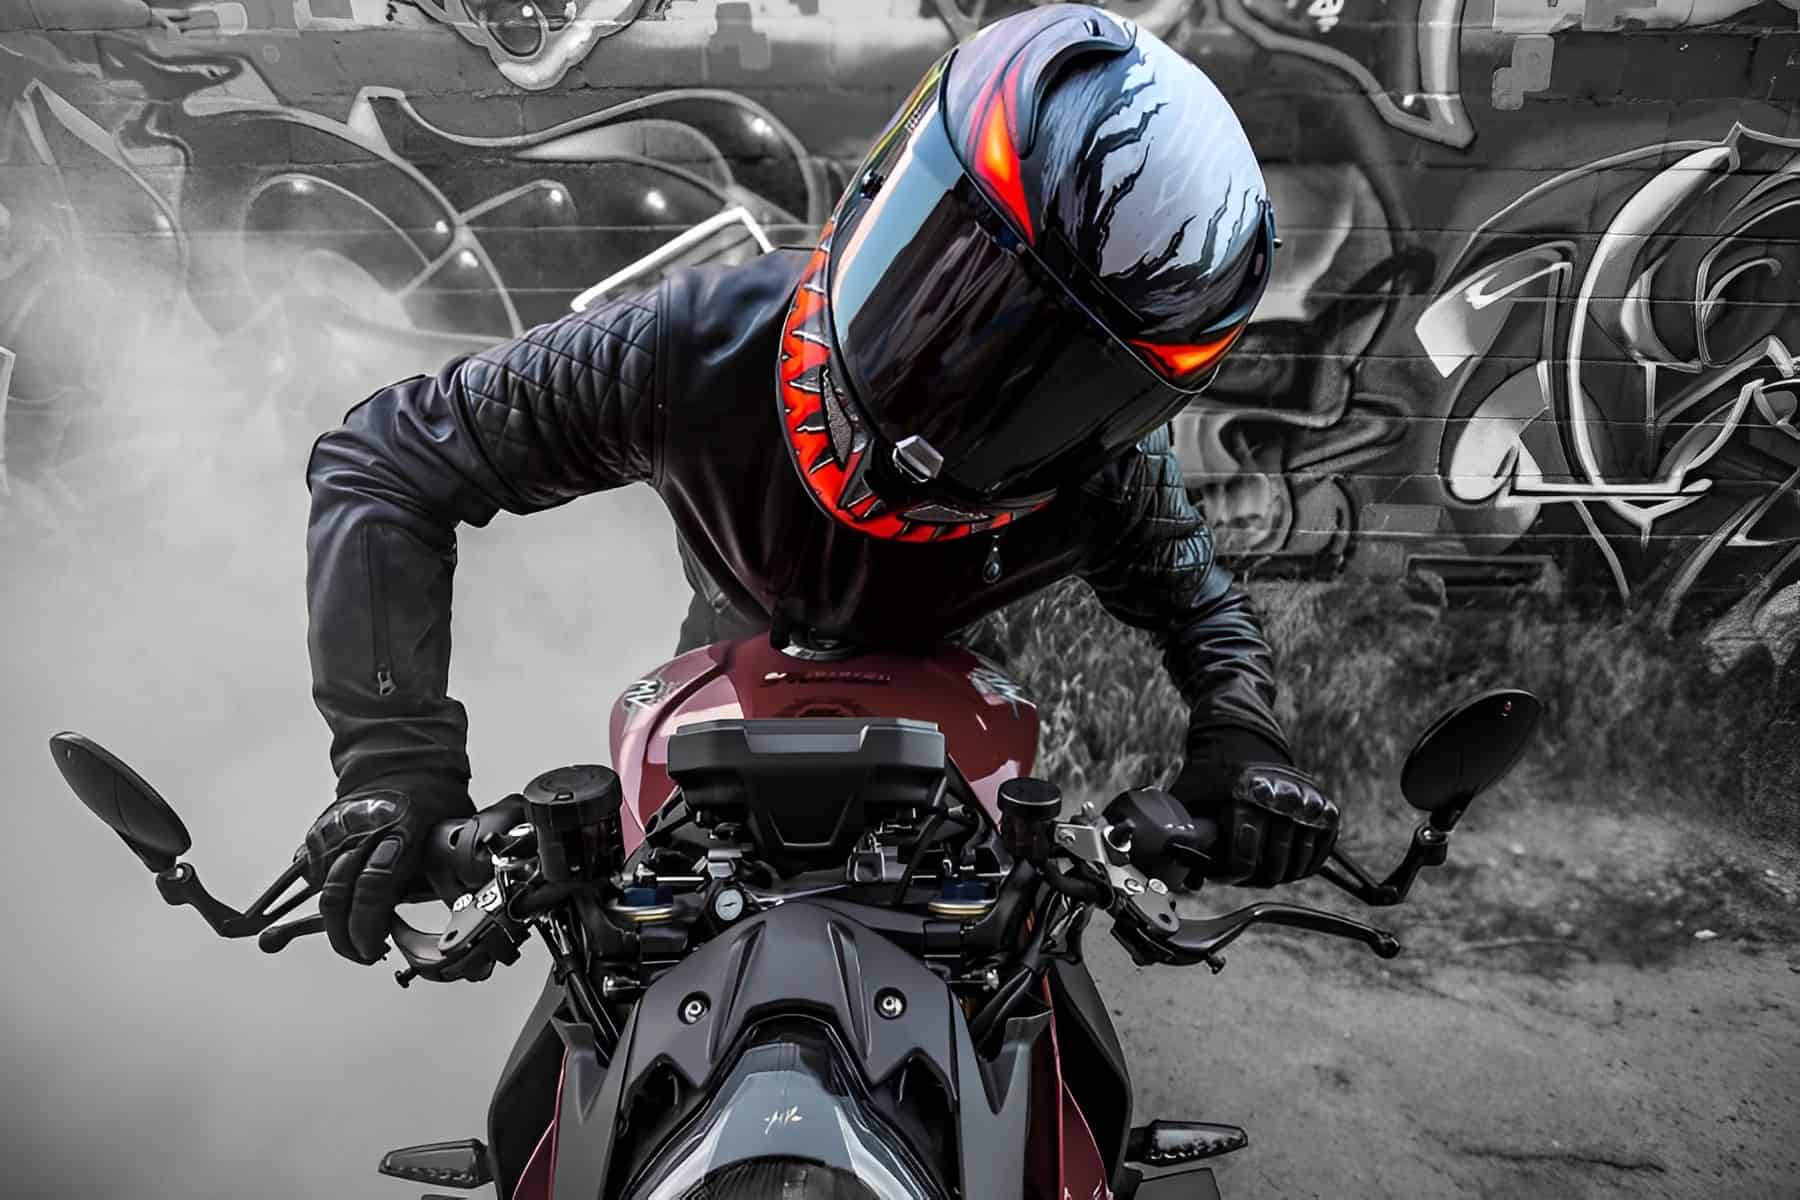 Laquila lança linha inédita de capacetes com tecnologia da motovelocidade